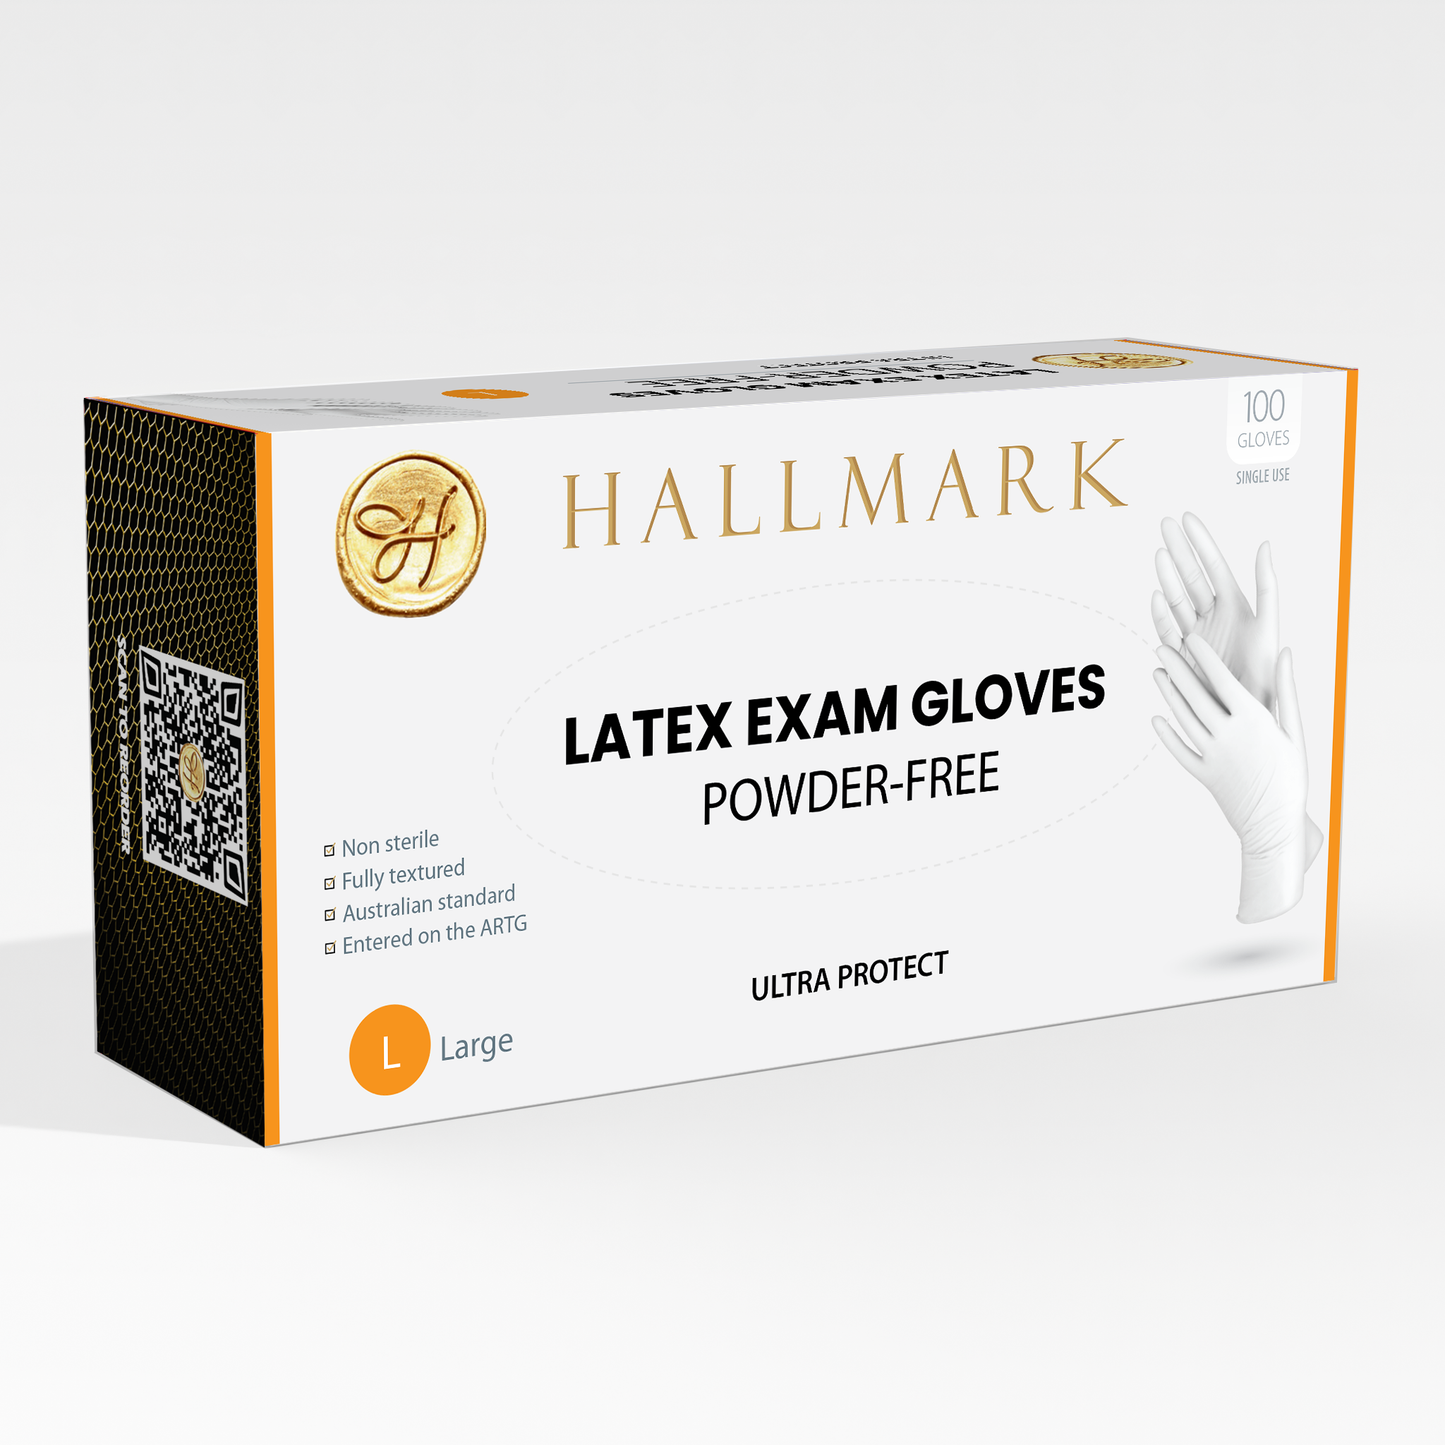 Hallmark Premium Latex Gloves $6.95 per box of 100, 10 boxes per carton